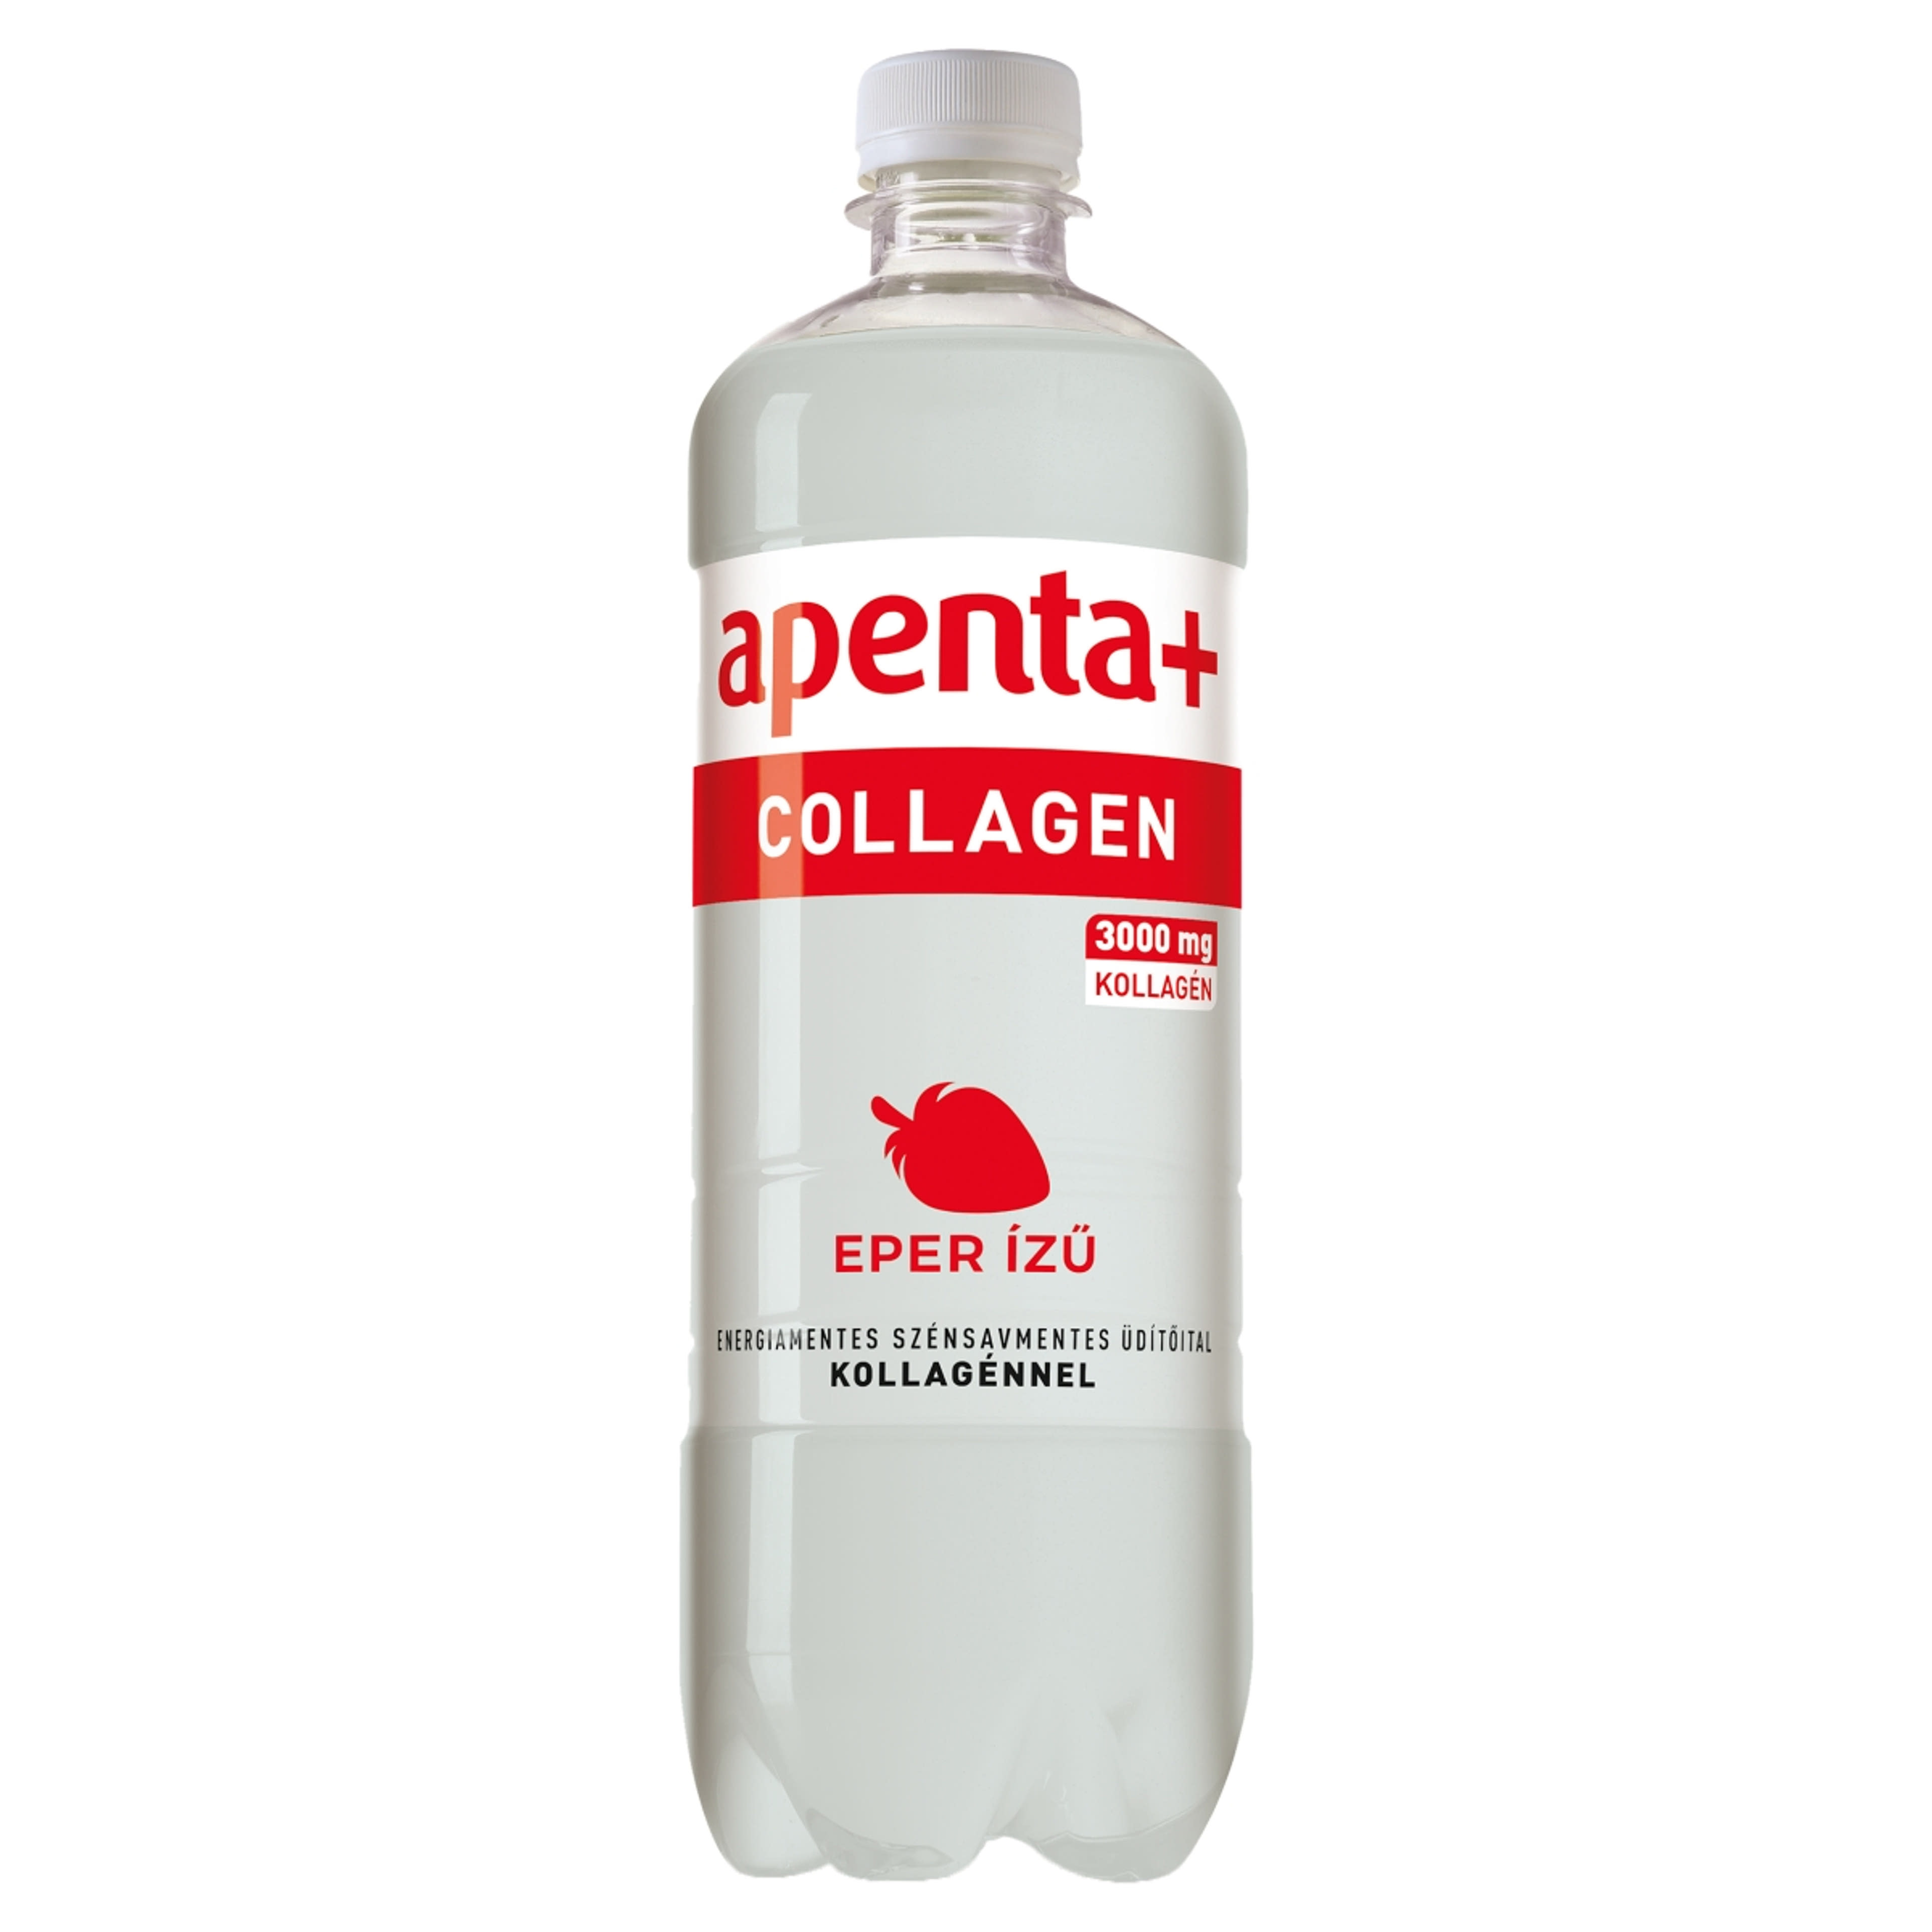 Apenta+ Collagen szénsavmentes üdítőital kollagénnel eper  ízű - 750 ml